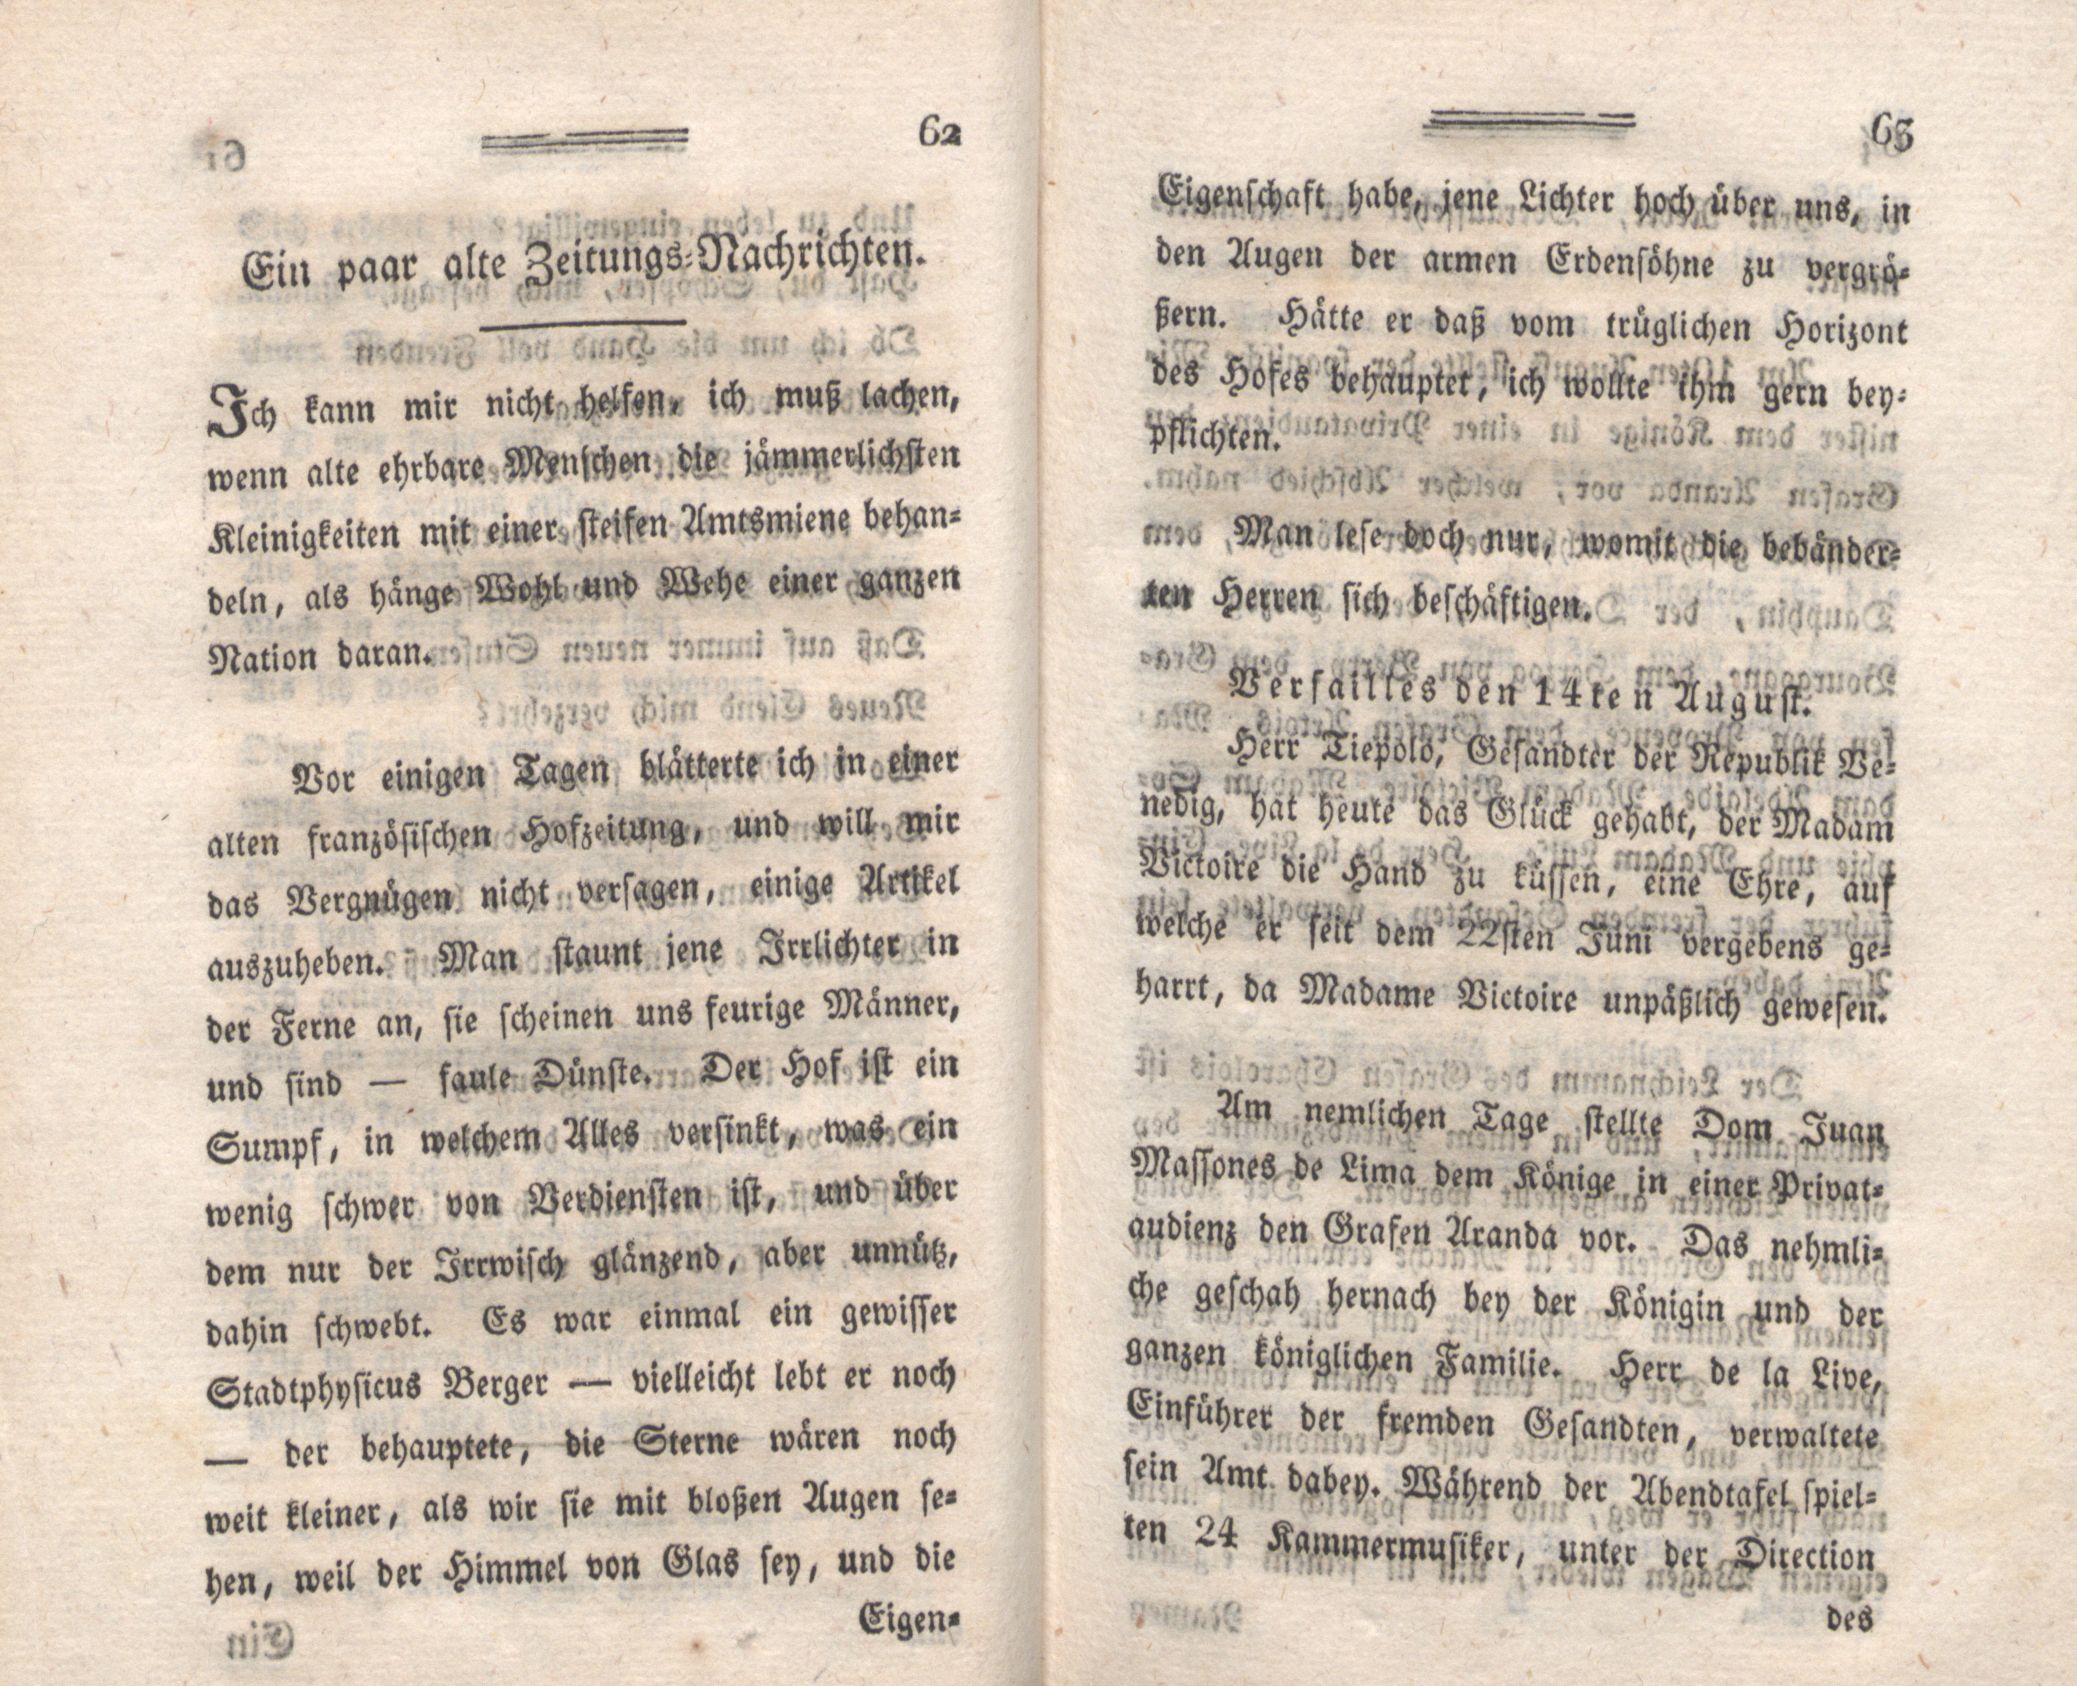 Ein paar alte Zeitungs-Nachrichten (1794) | 1. (62-63) Main body of text